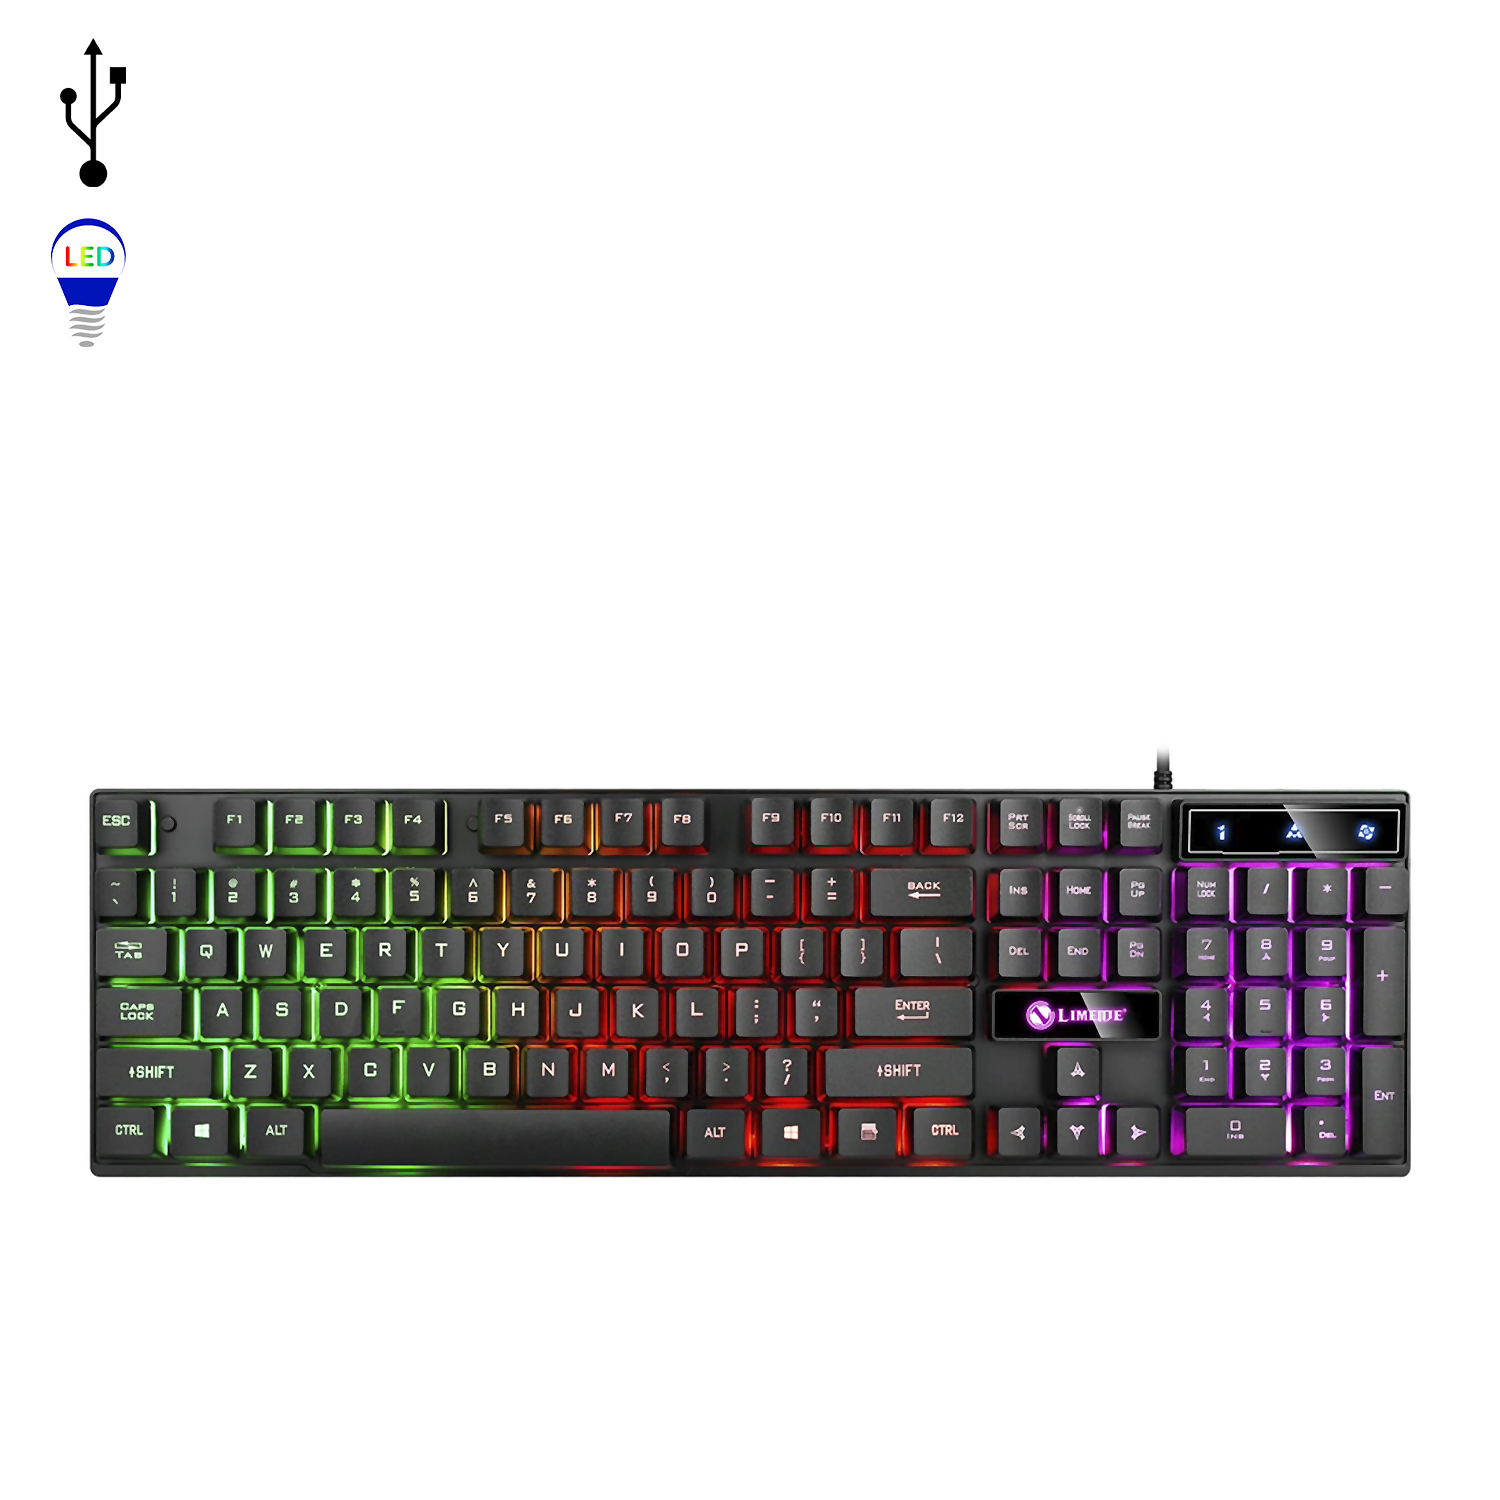 Pack gaming Windrunner 2 de teclado y ratón con luces RGB. 1000dpi.